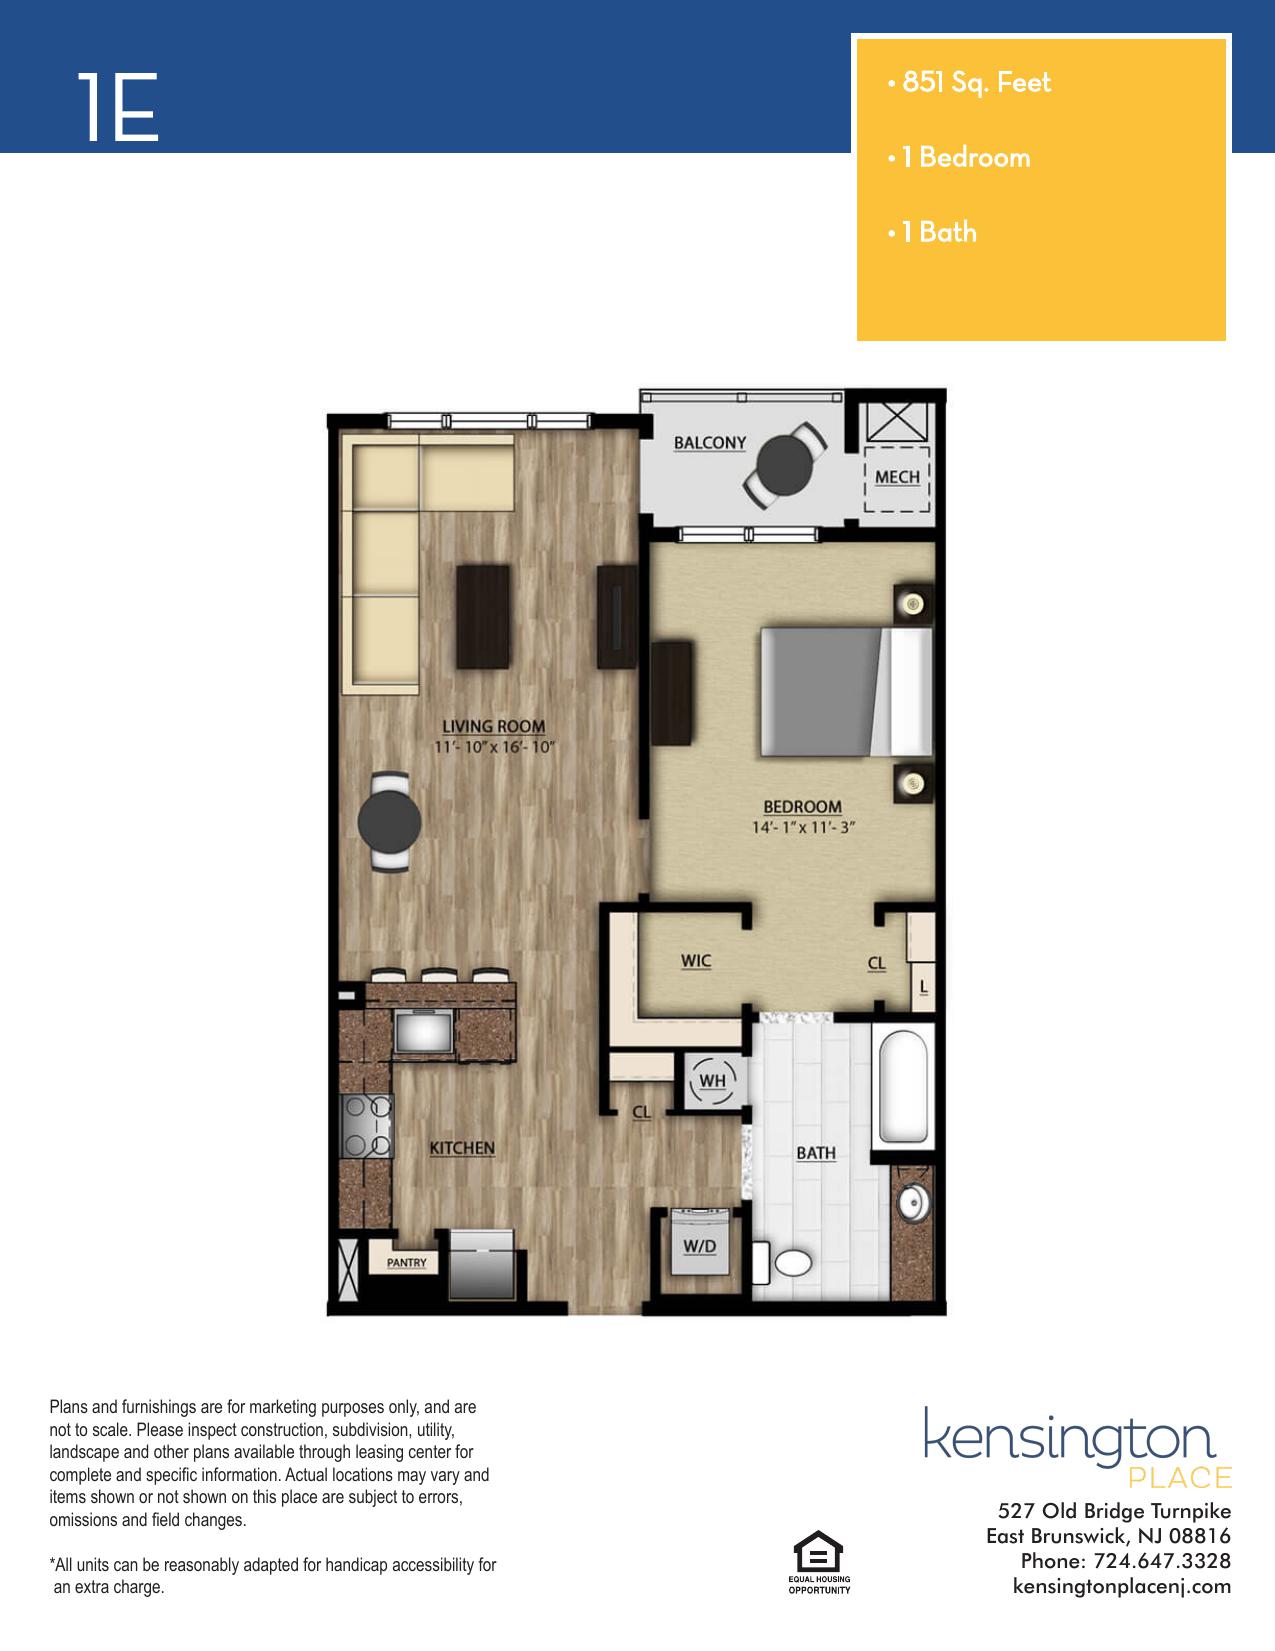 Kensington Place Apartment Floor Plan 1E